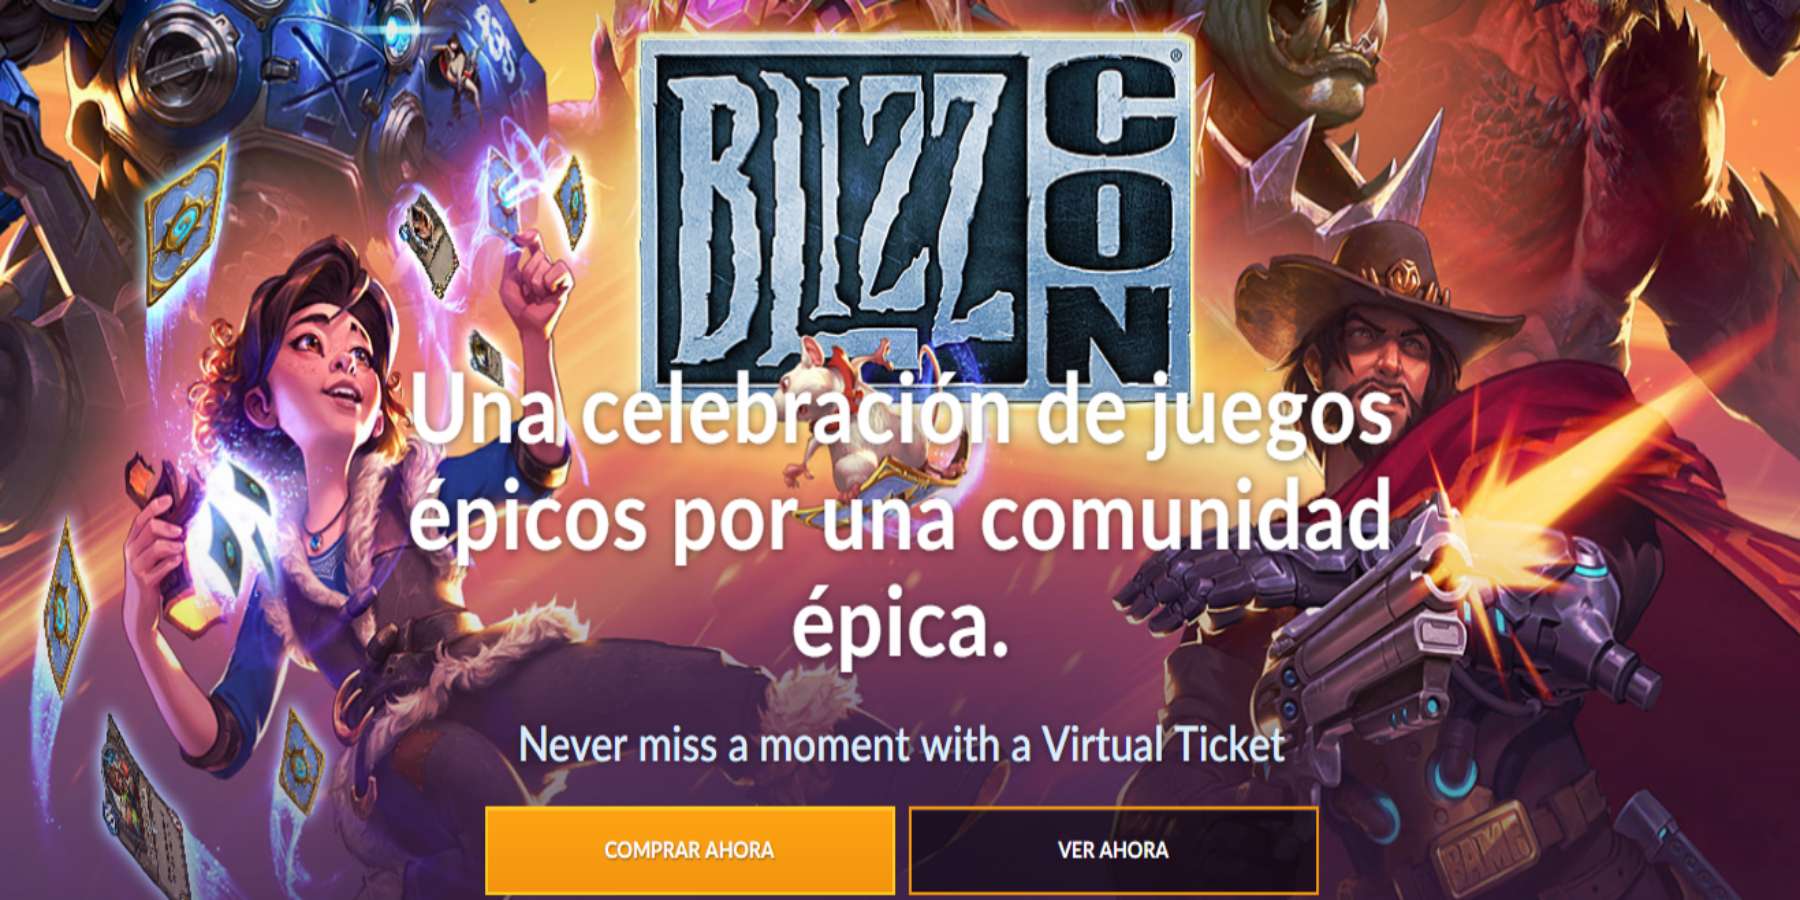 Boleto virtual de la BlizzCon 2018